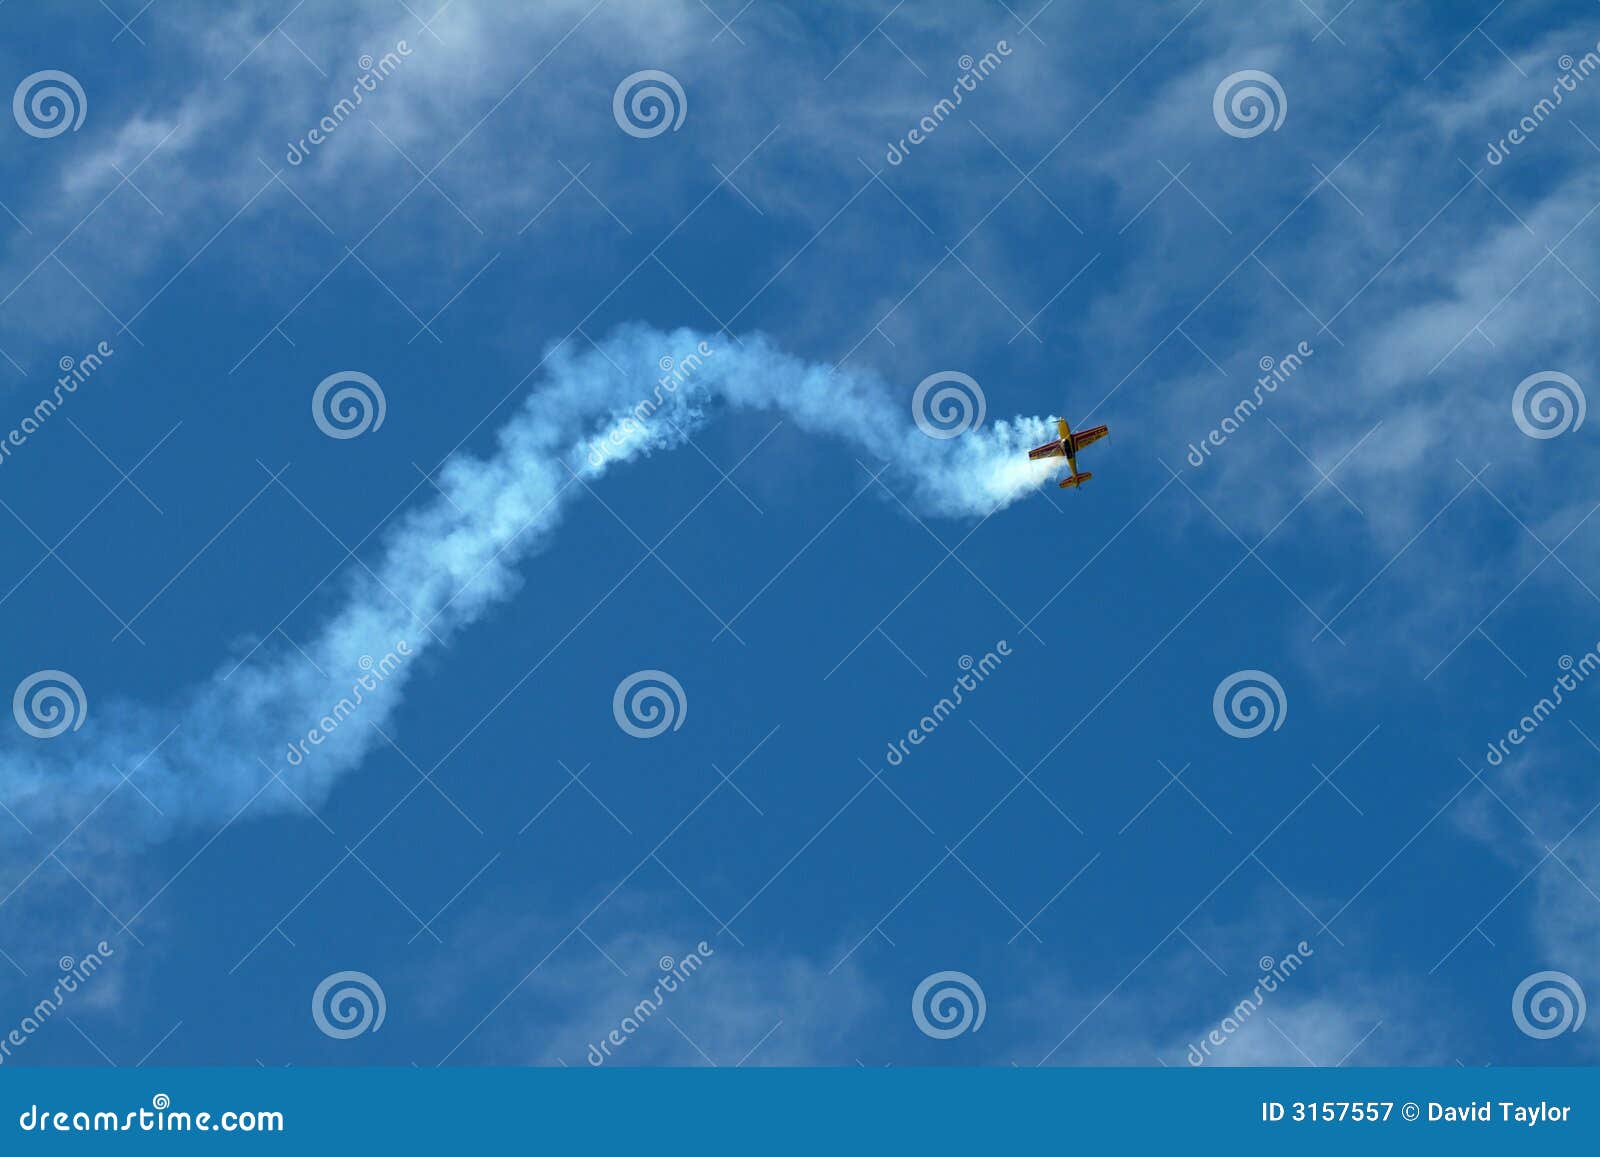 air plane aerobatics